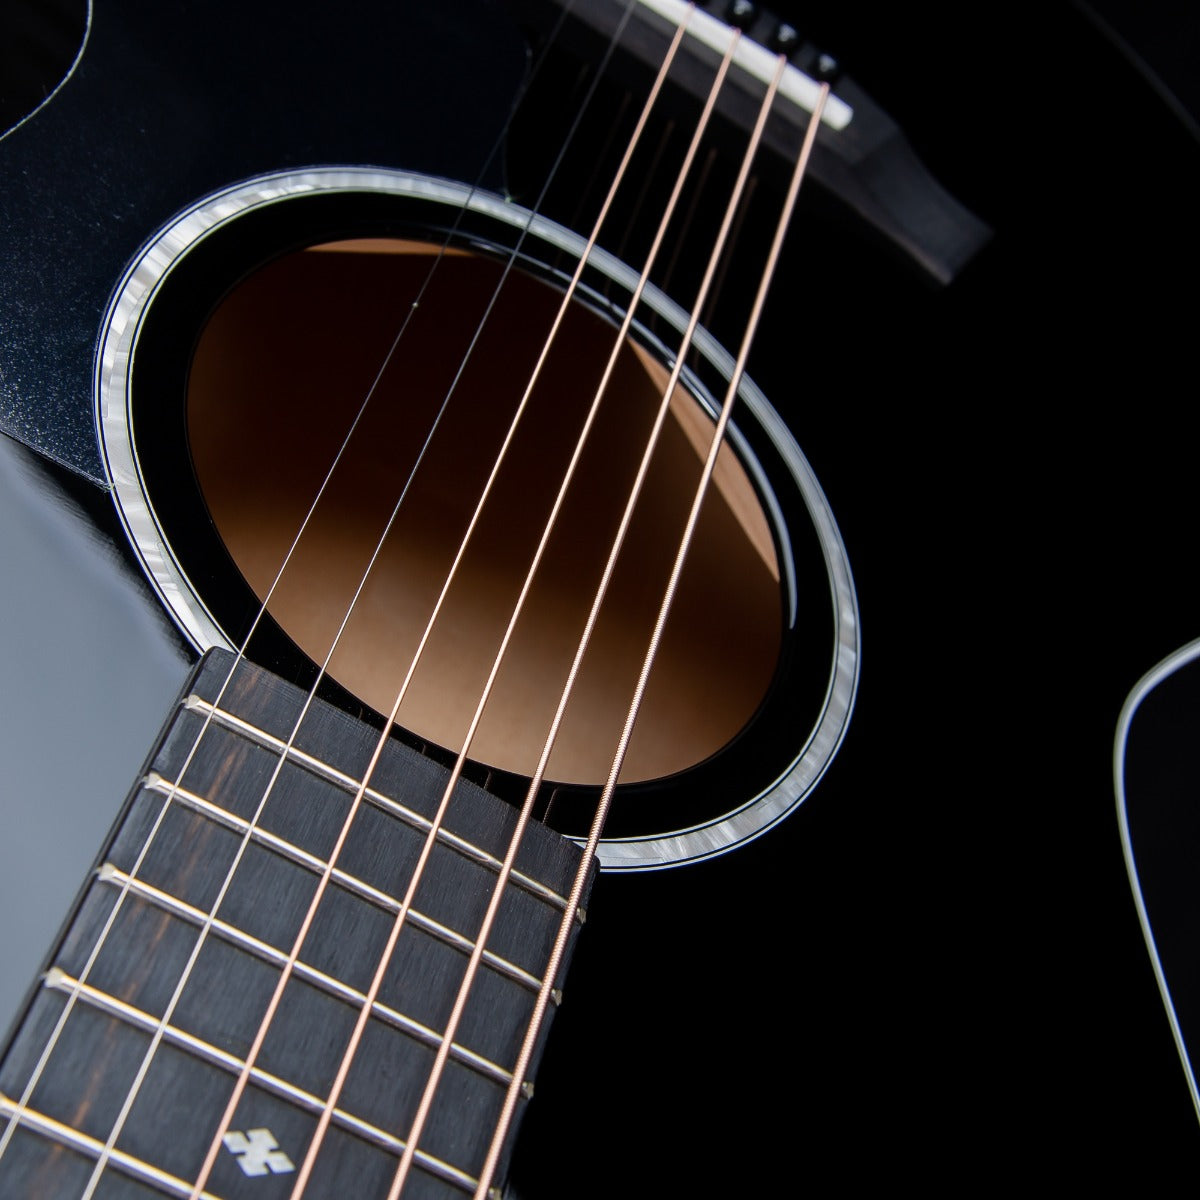 Taylor 214ce-BLK DLX Acoustic-Electric Guitar - Black view 12